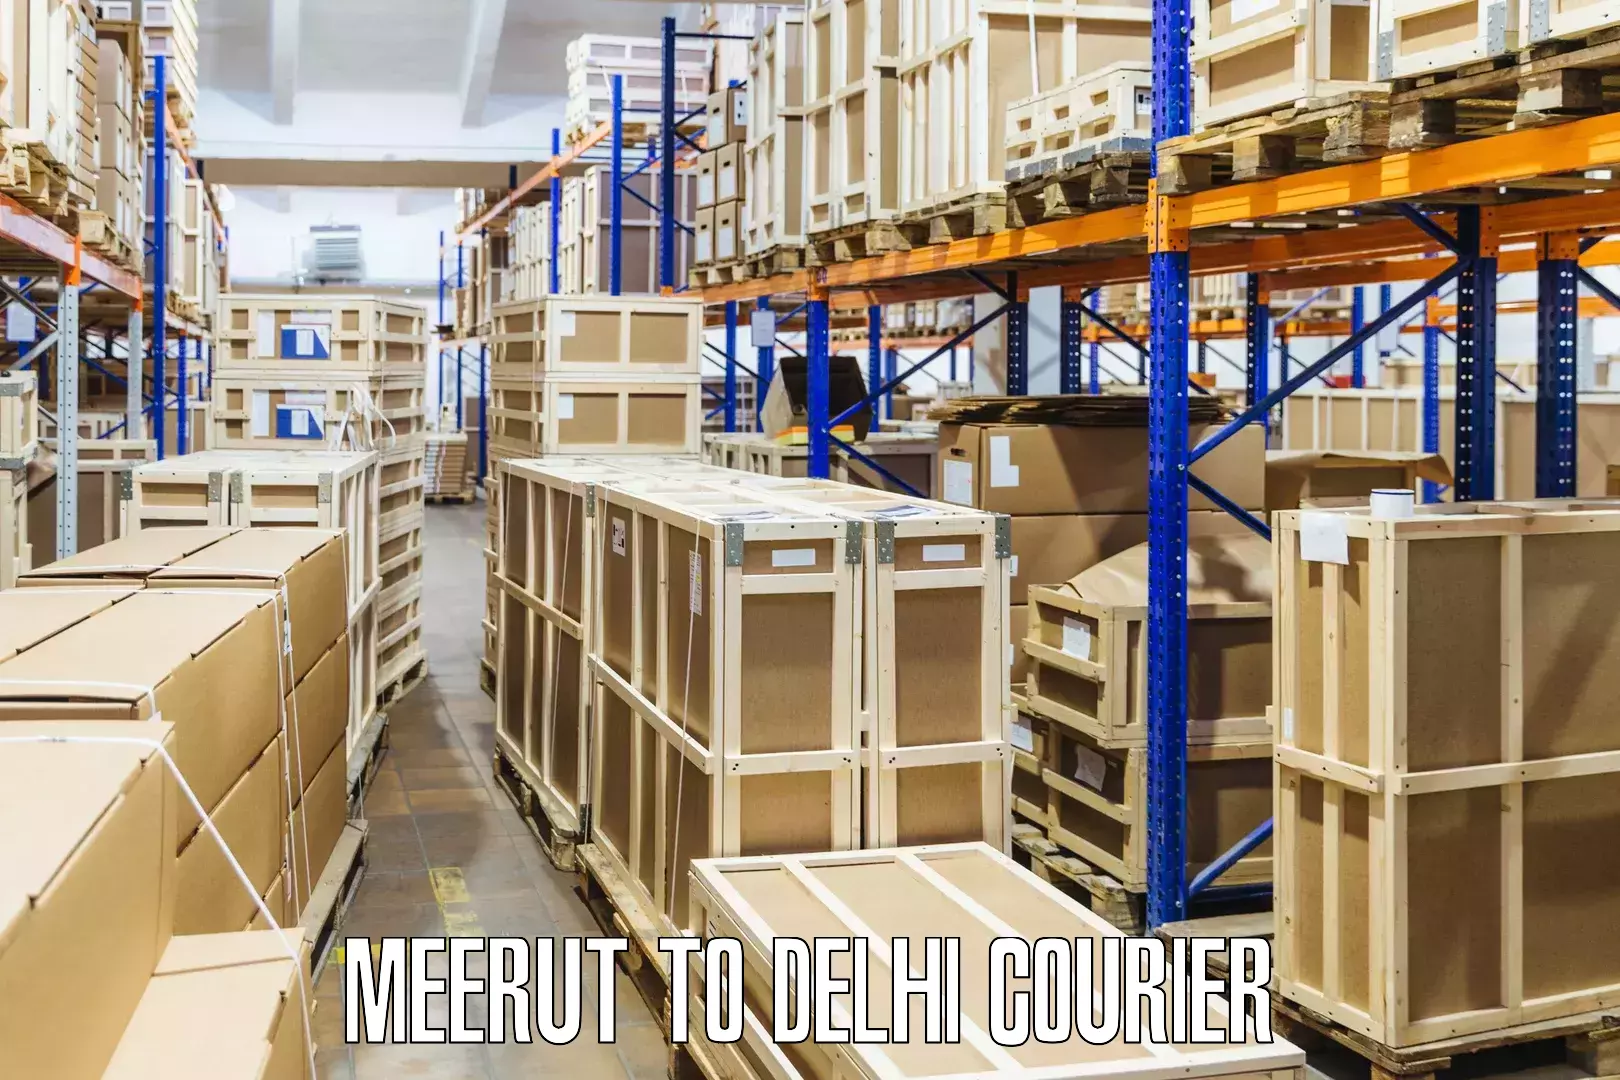 Express delivery capabilities Meerut to IIT Delhi